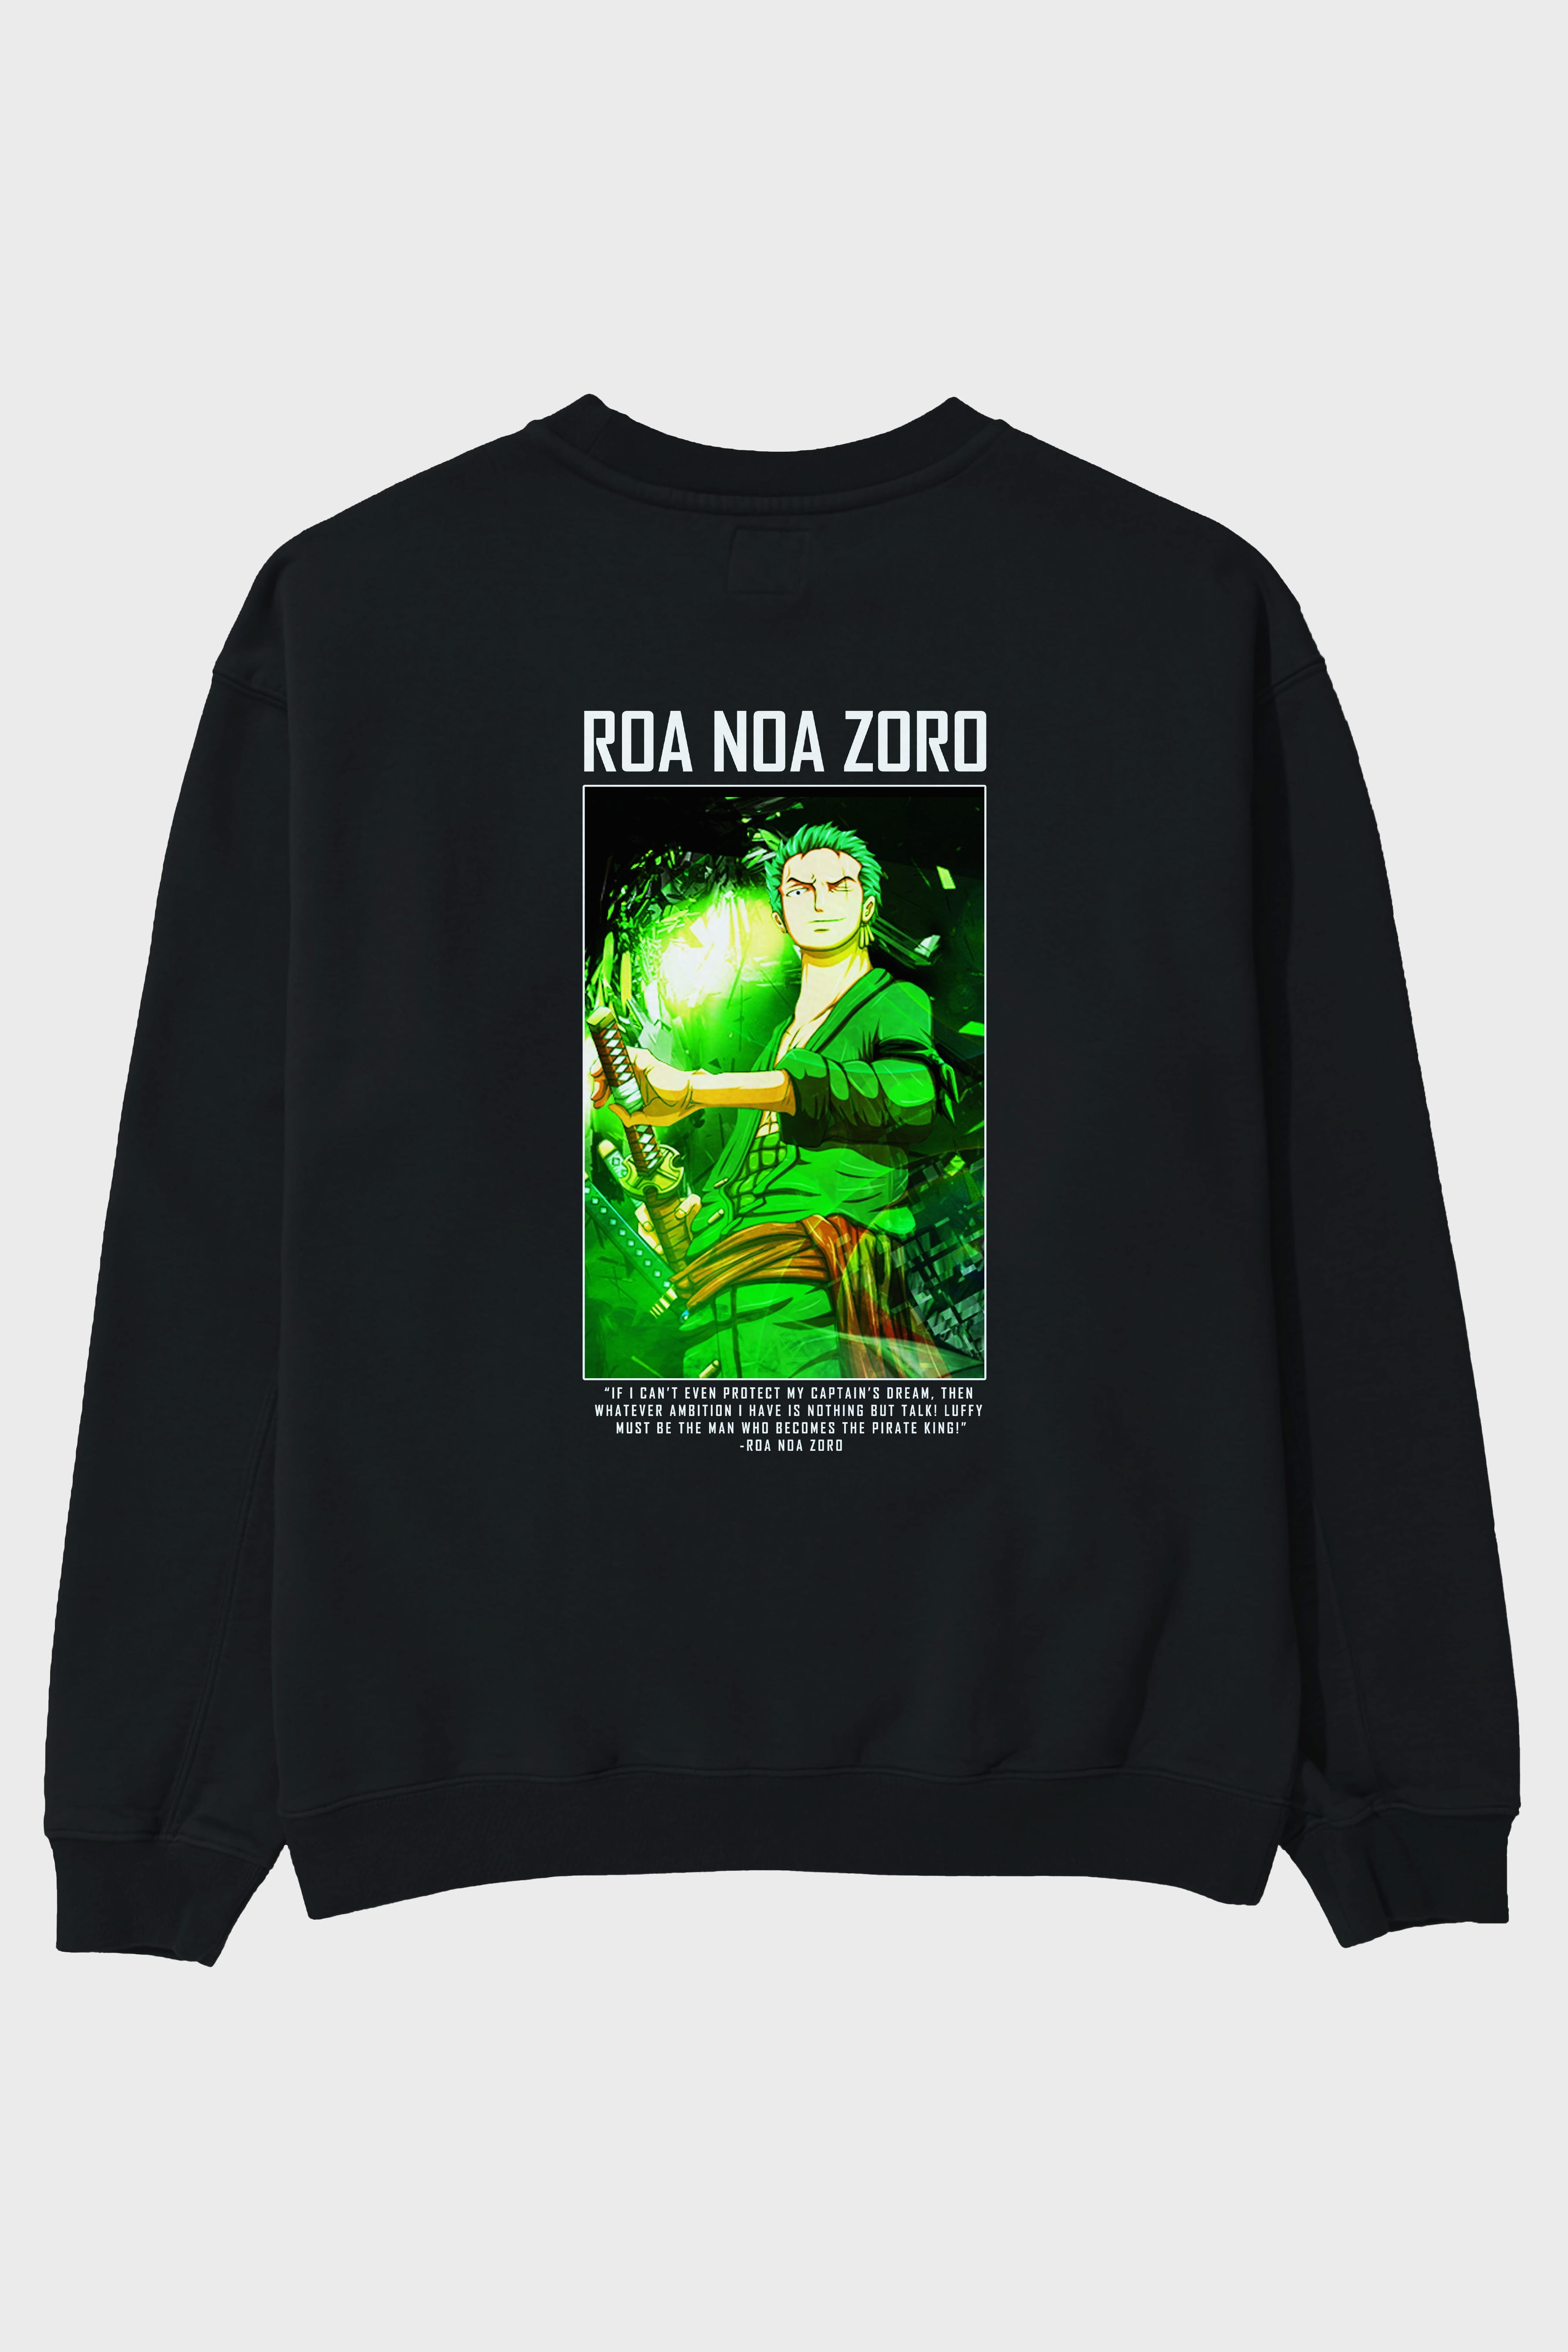 Roronoa Zoro 5 Arka Baskılı Anime Oversize Sweatshirt Erkek Kadın Unisex